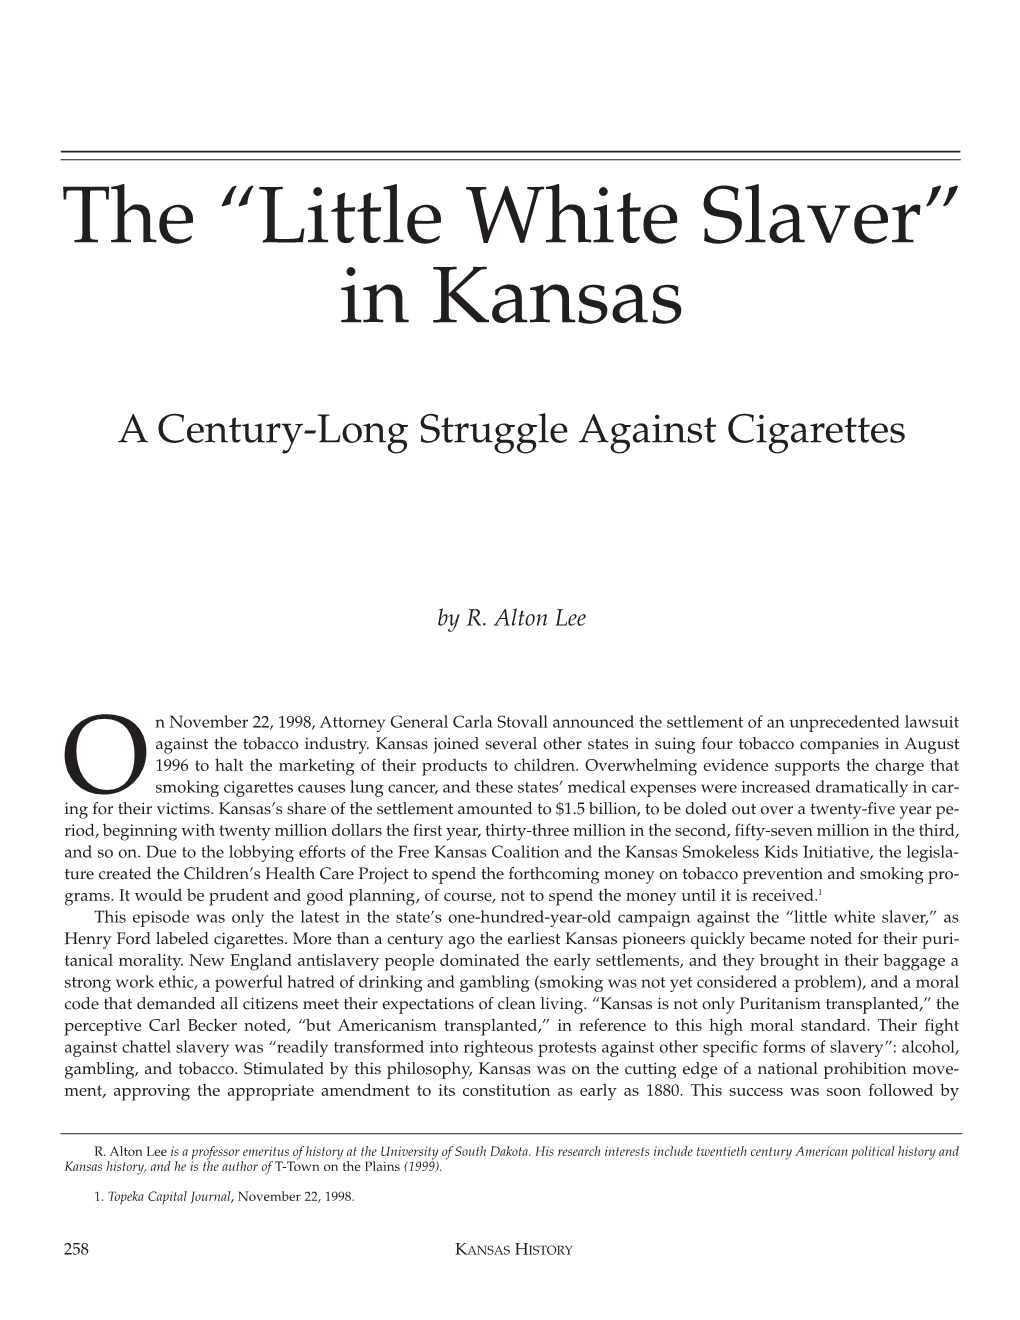 The “Little White Slaver” in Kansas